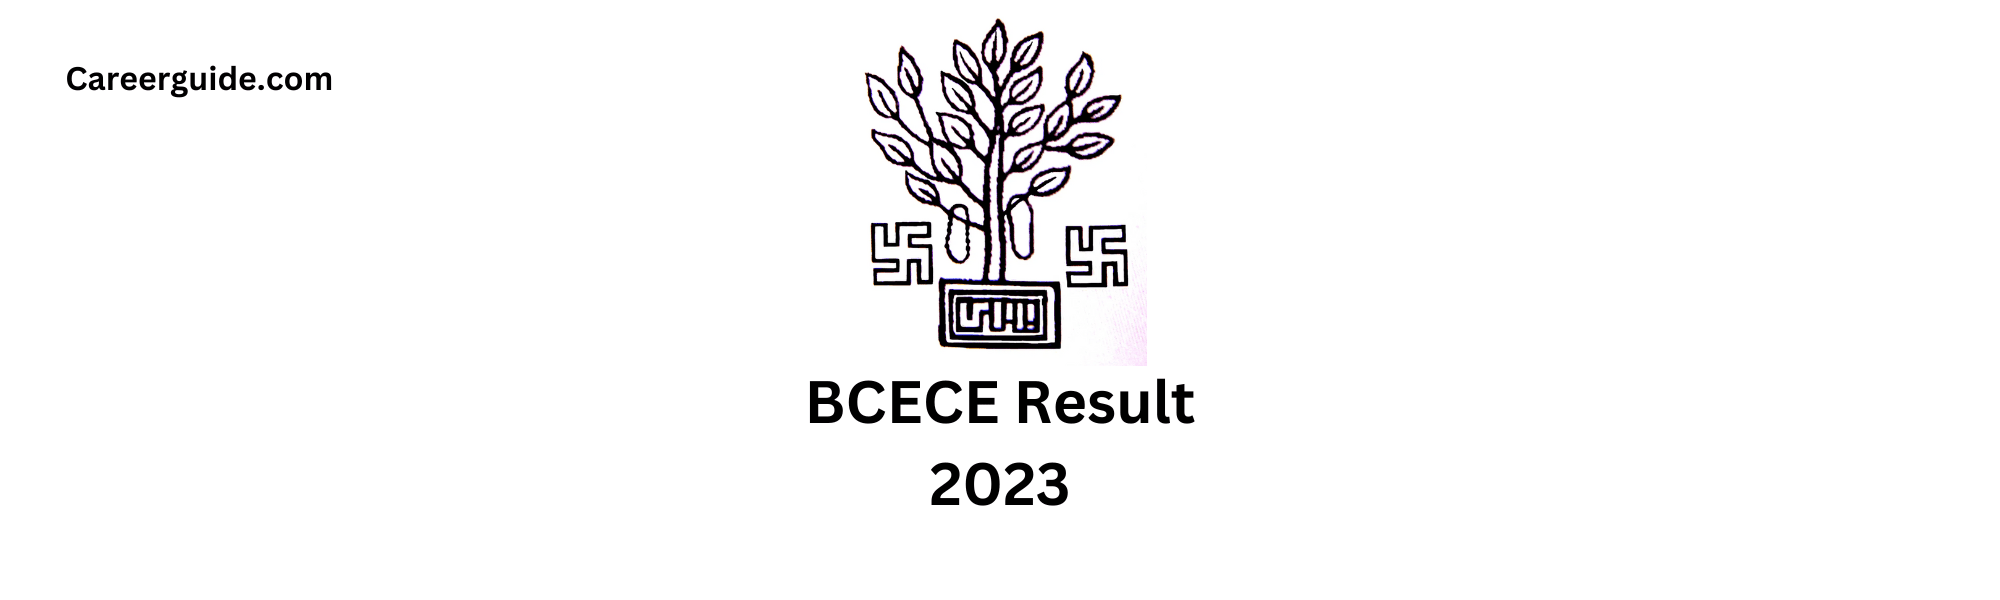 BCECE Result 2023: careerguide.com